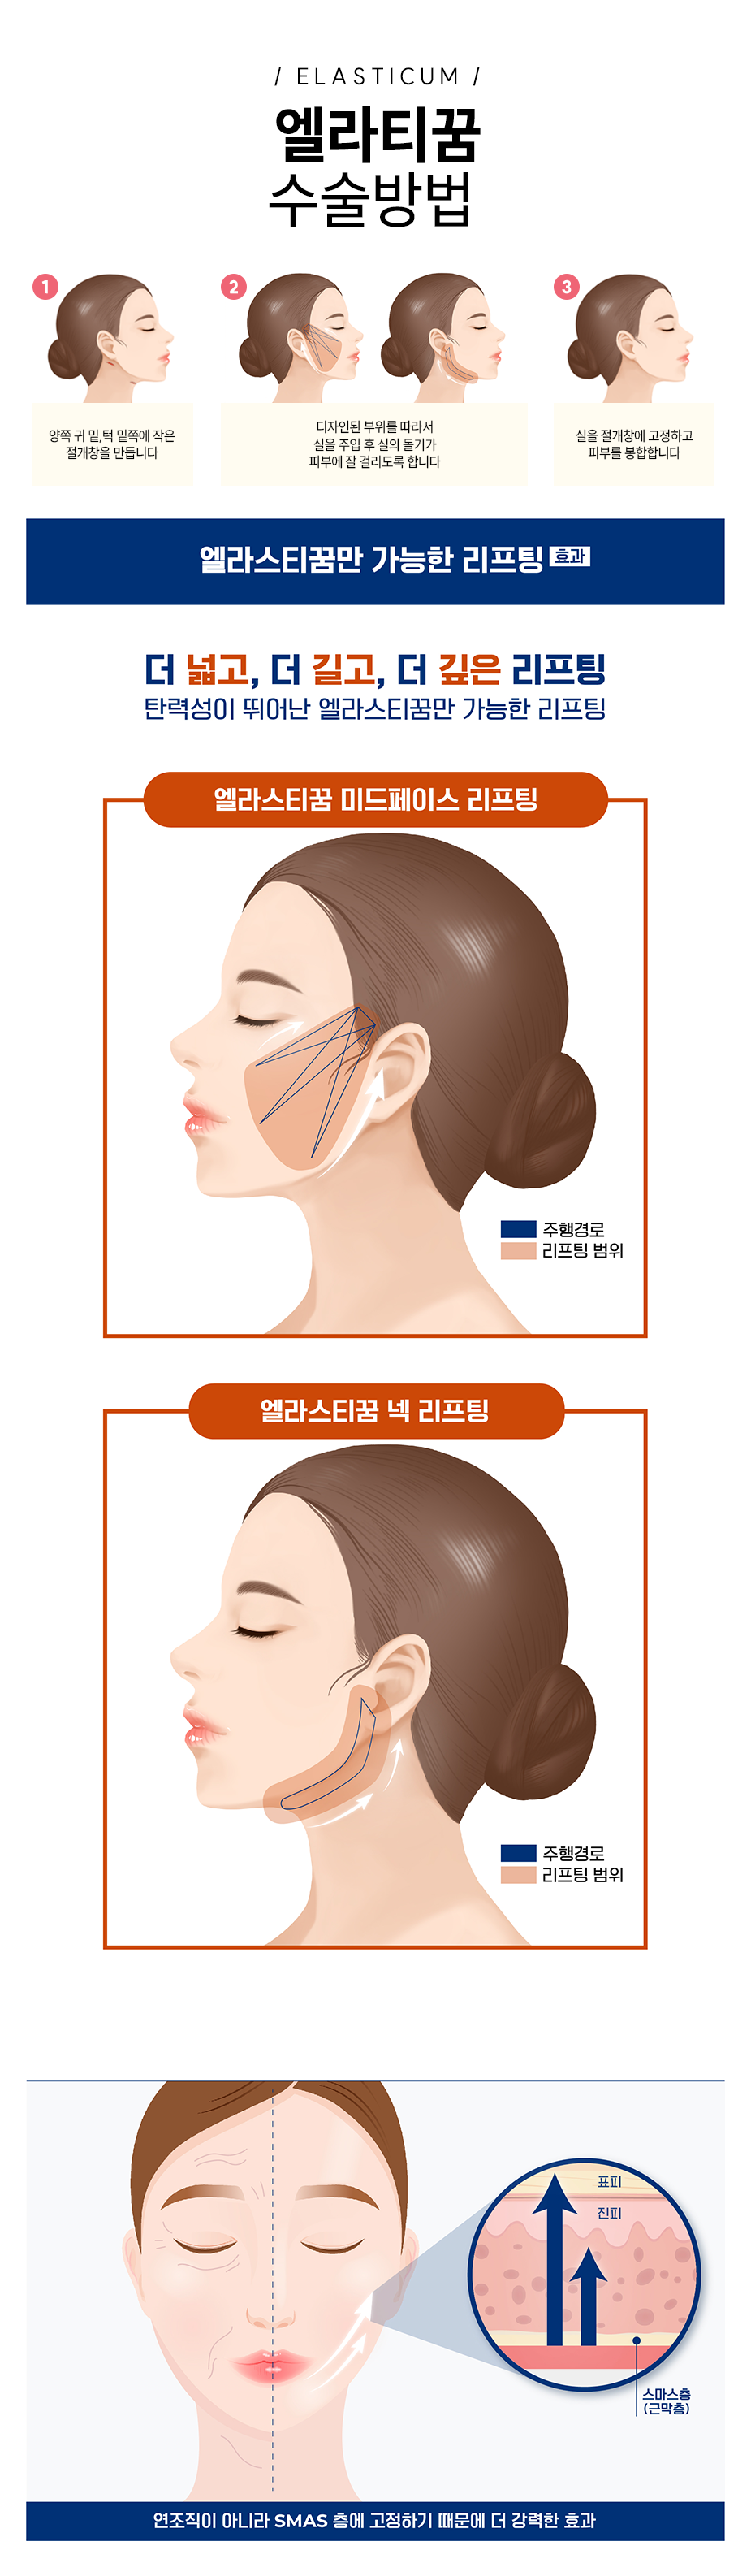 엘라스티꿈 수술방법 - 1.양쪽 귀 밑, 턱 밑쪽에 작은 절개창을 만듭니다. 2.디자인된 부위를 따라서 실을 주입 후 실의 돌기가 피부에 잘 걸리도록 합니다. 3.실을 절개창에 고정하고 피부를 봉합합니다.